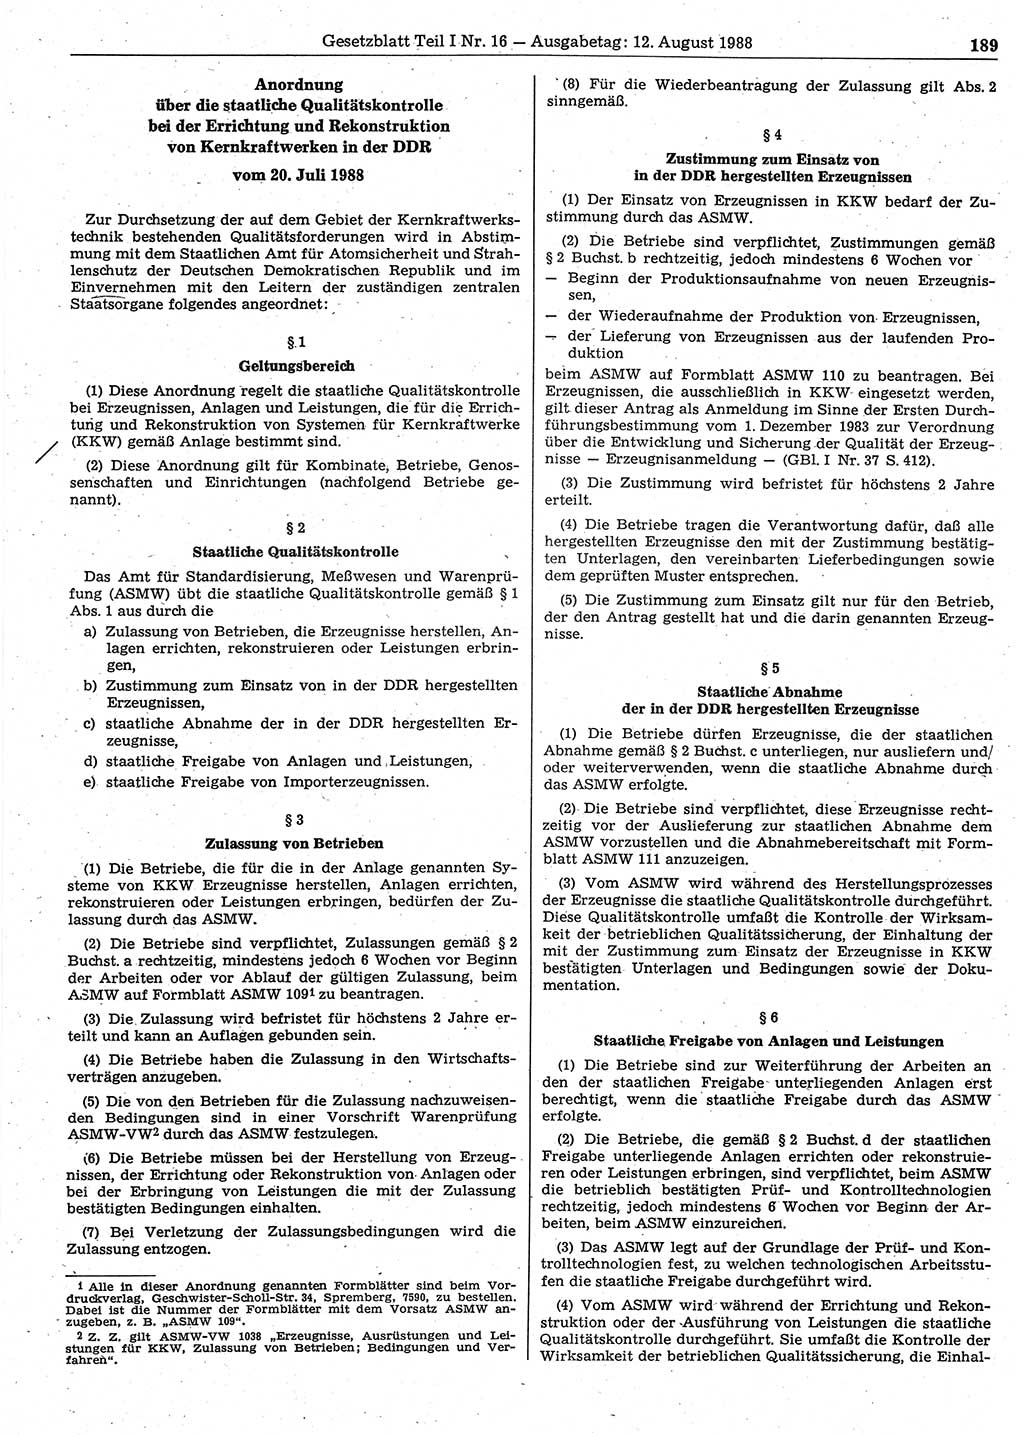 Gesetzblatt (GBl.) der Deutschen Demokratischen Republik (DDR) Teil Ⅰ 1988, Seite 189 (GBl. DDR Ⅰ 1988, S. 189)